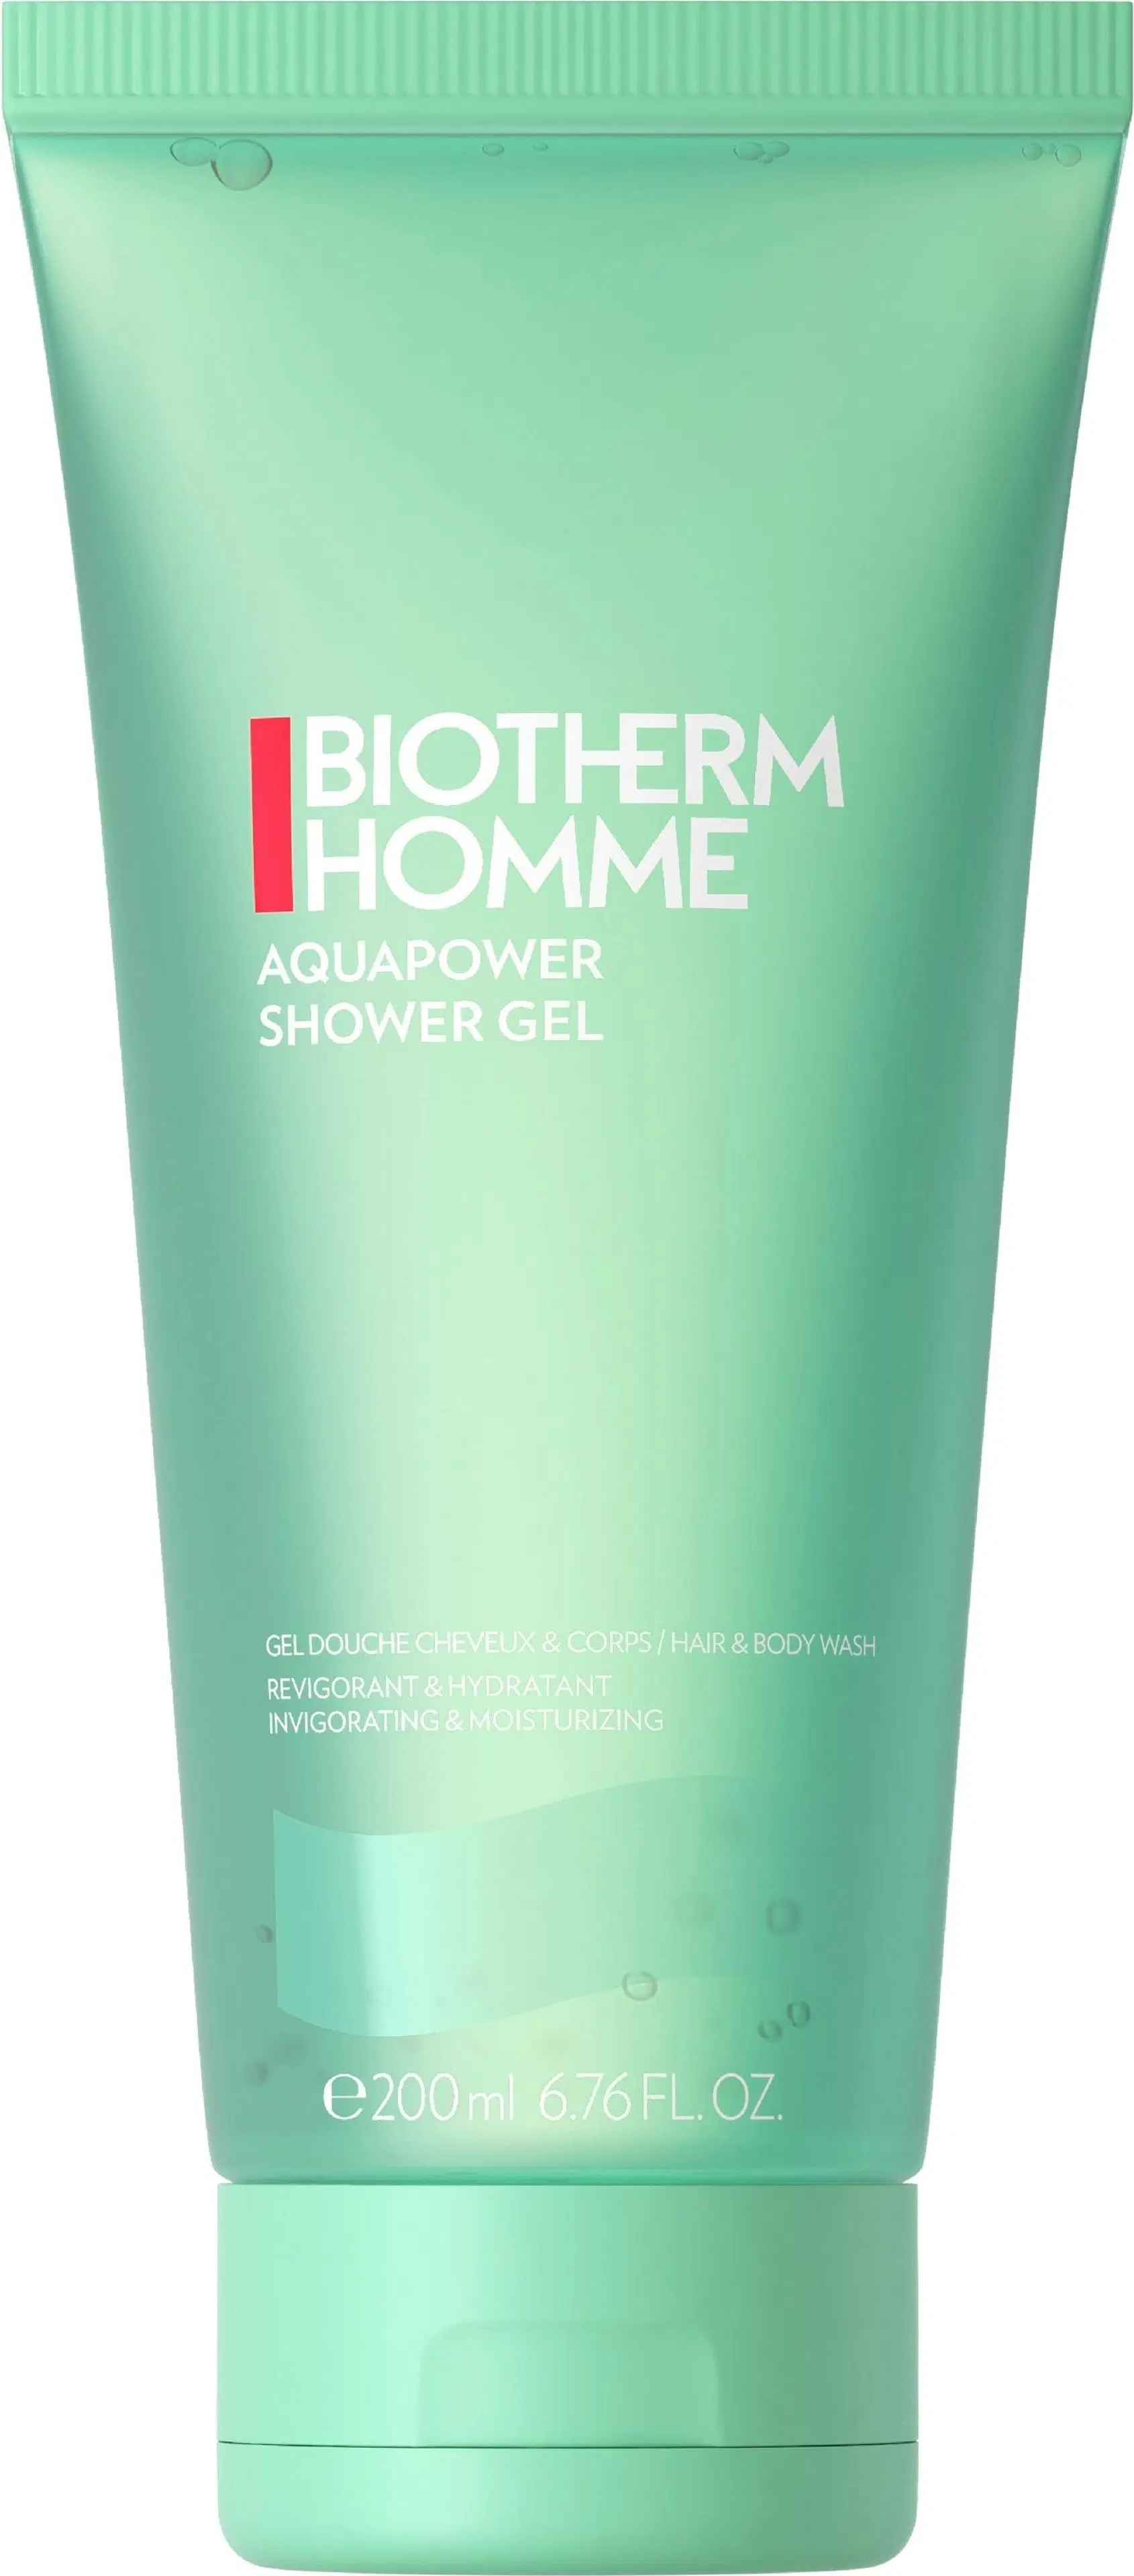 Biotherm Homme Aquapower Shower Gel suihkugeeli 200 ml